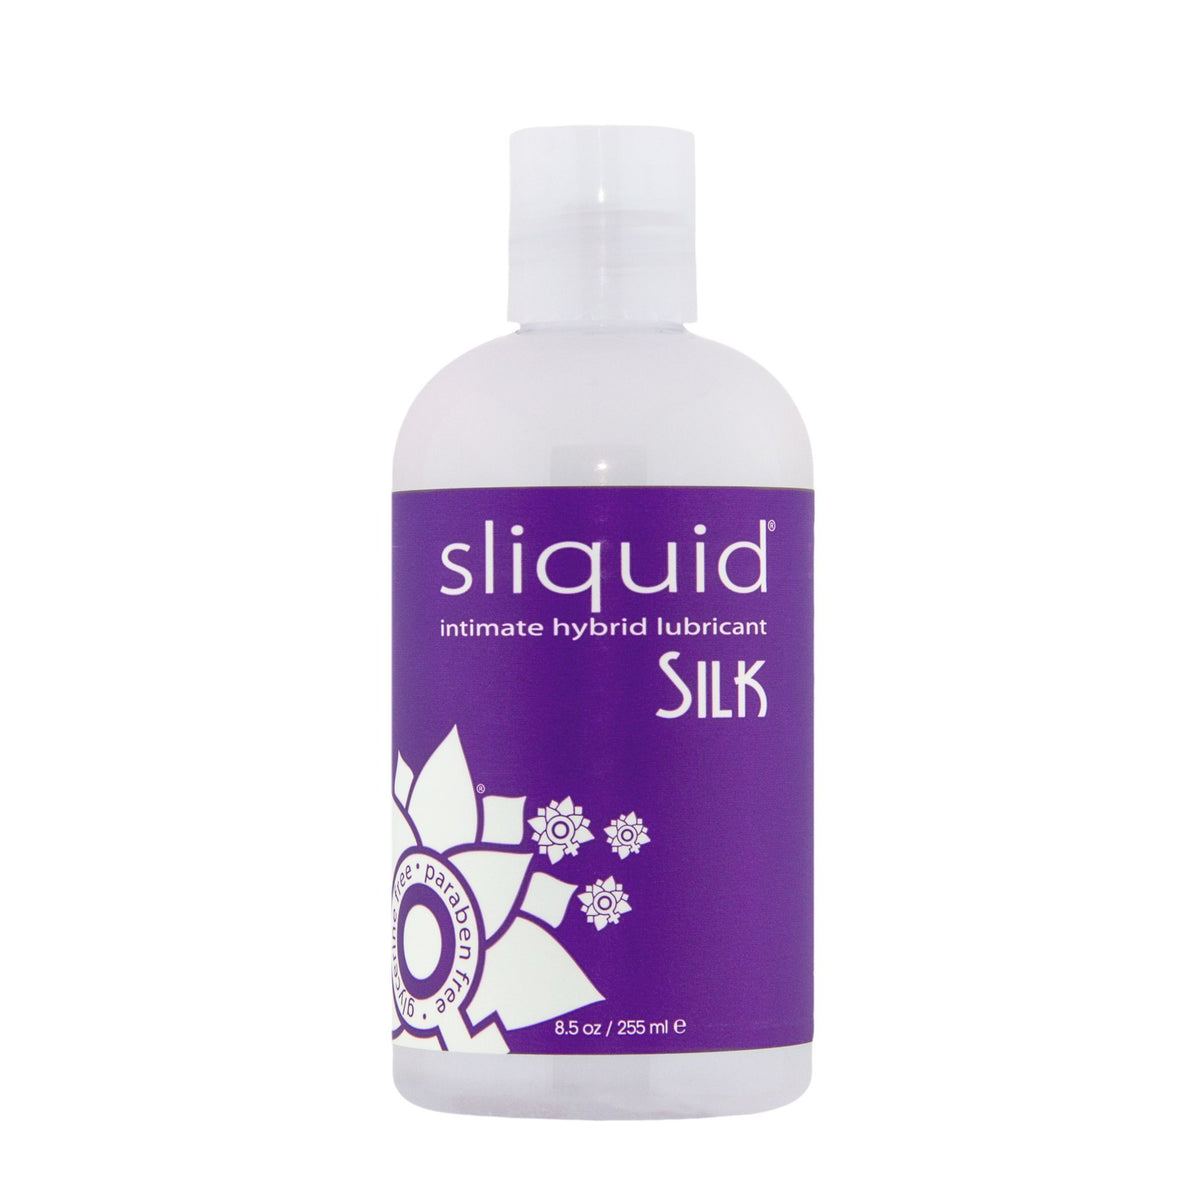 Sliquid - Silk Hybrid Naturals Lubricant Bottle 8.5 oz (Lube) SL1017 CherryAffairs